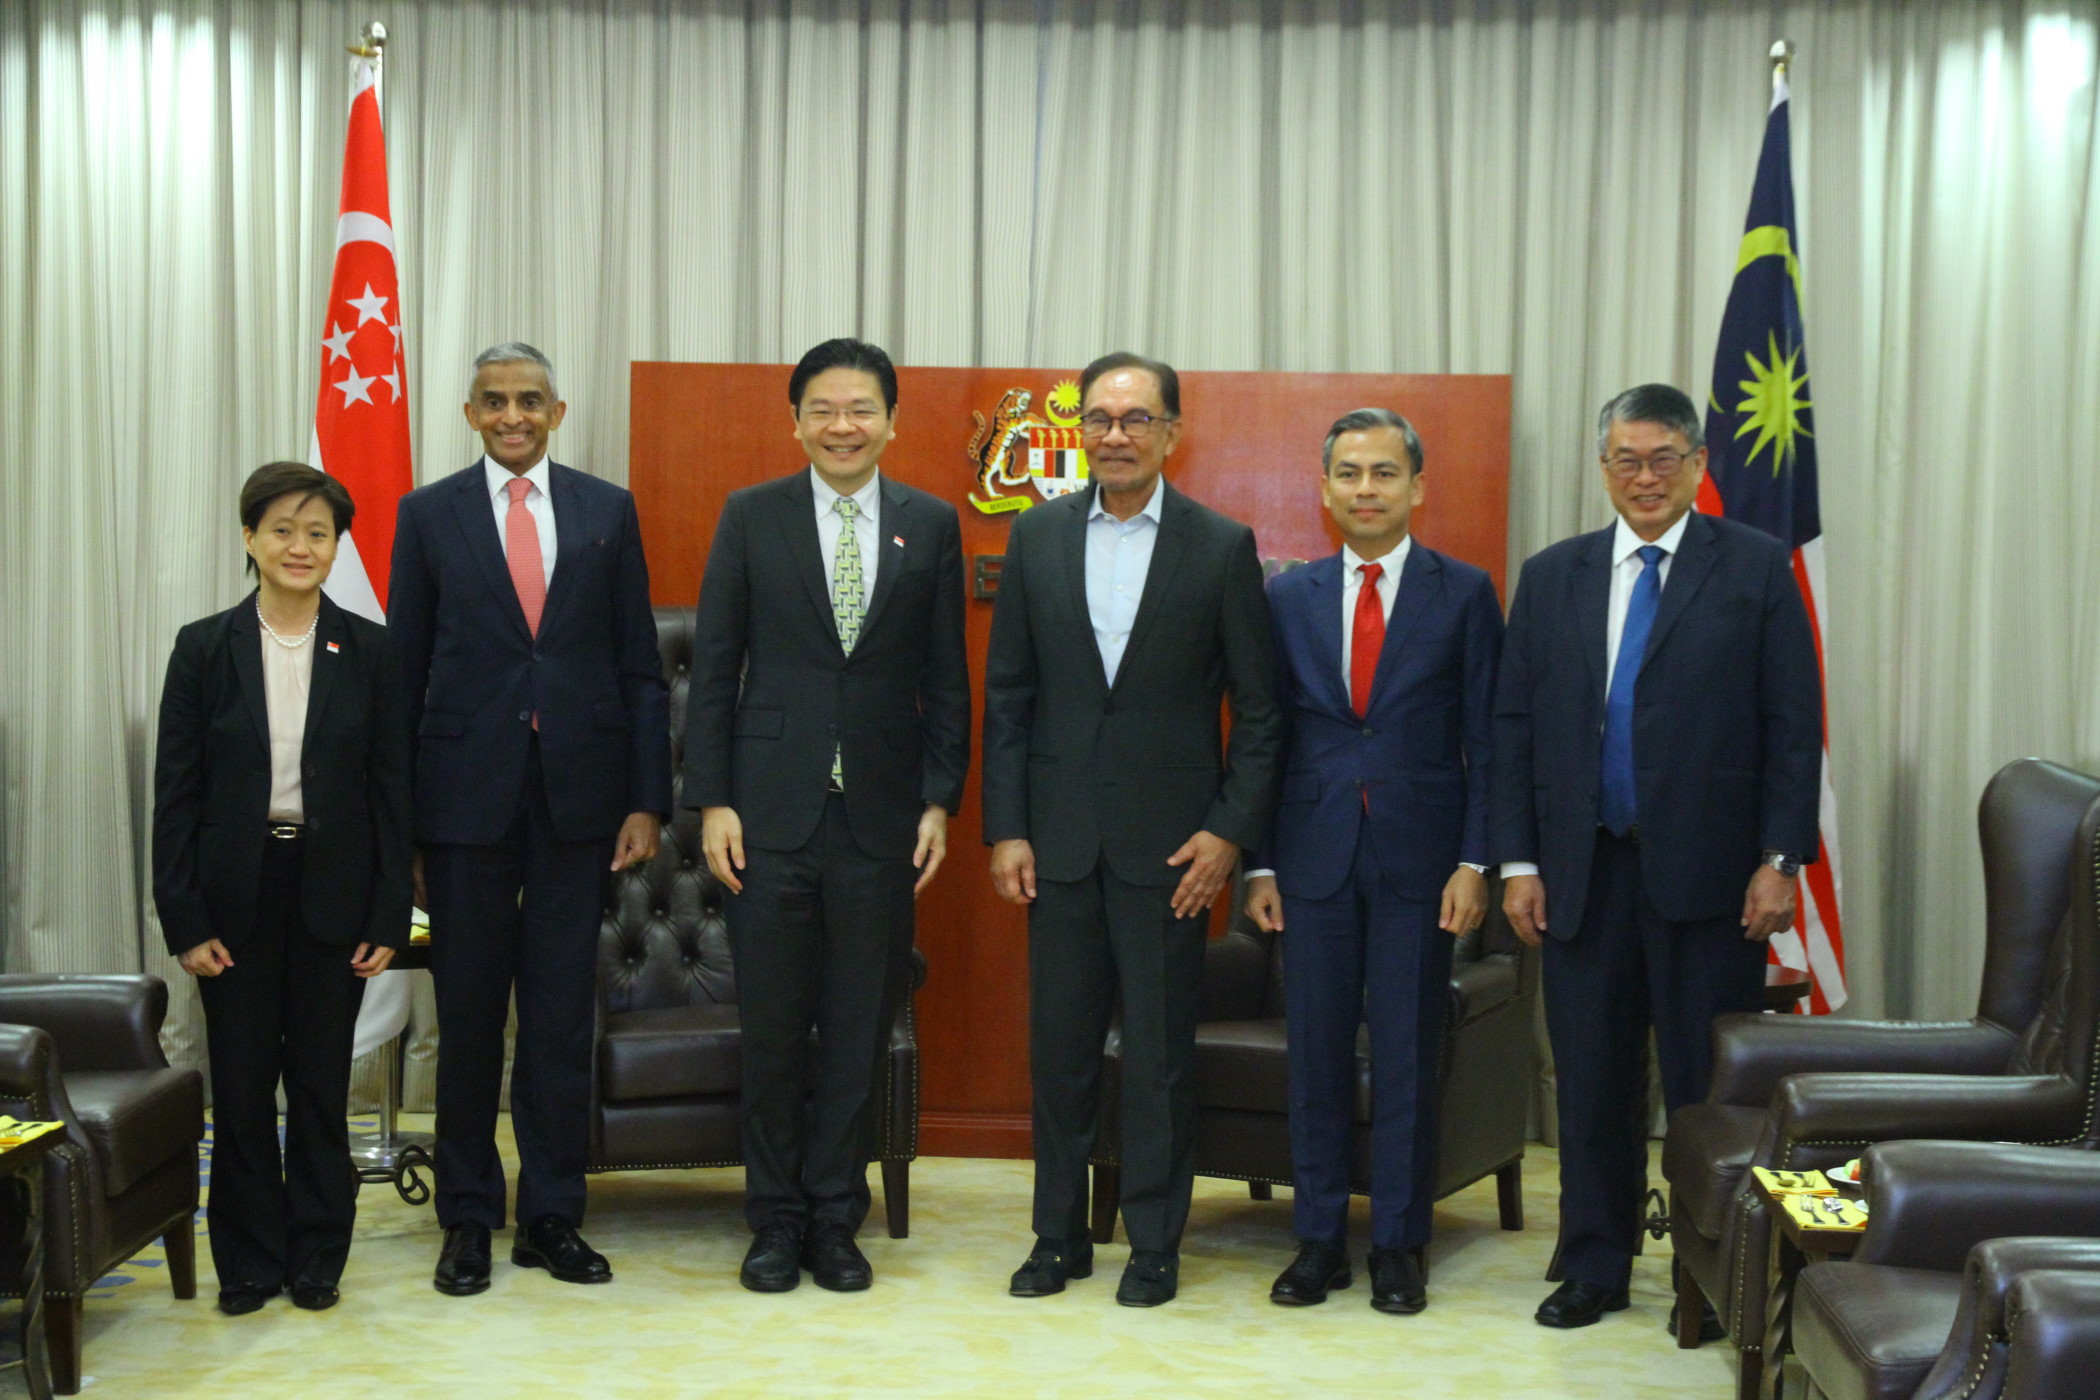 有图 / 安华和新加坡副总理见面